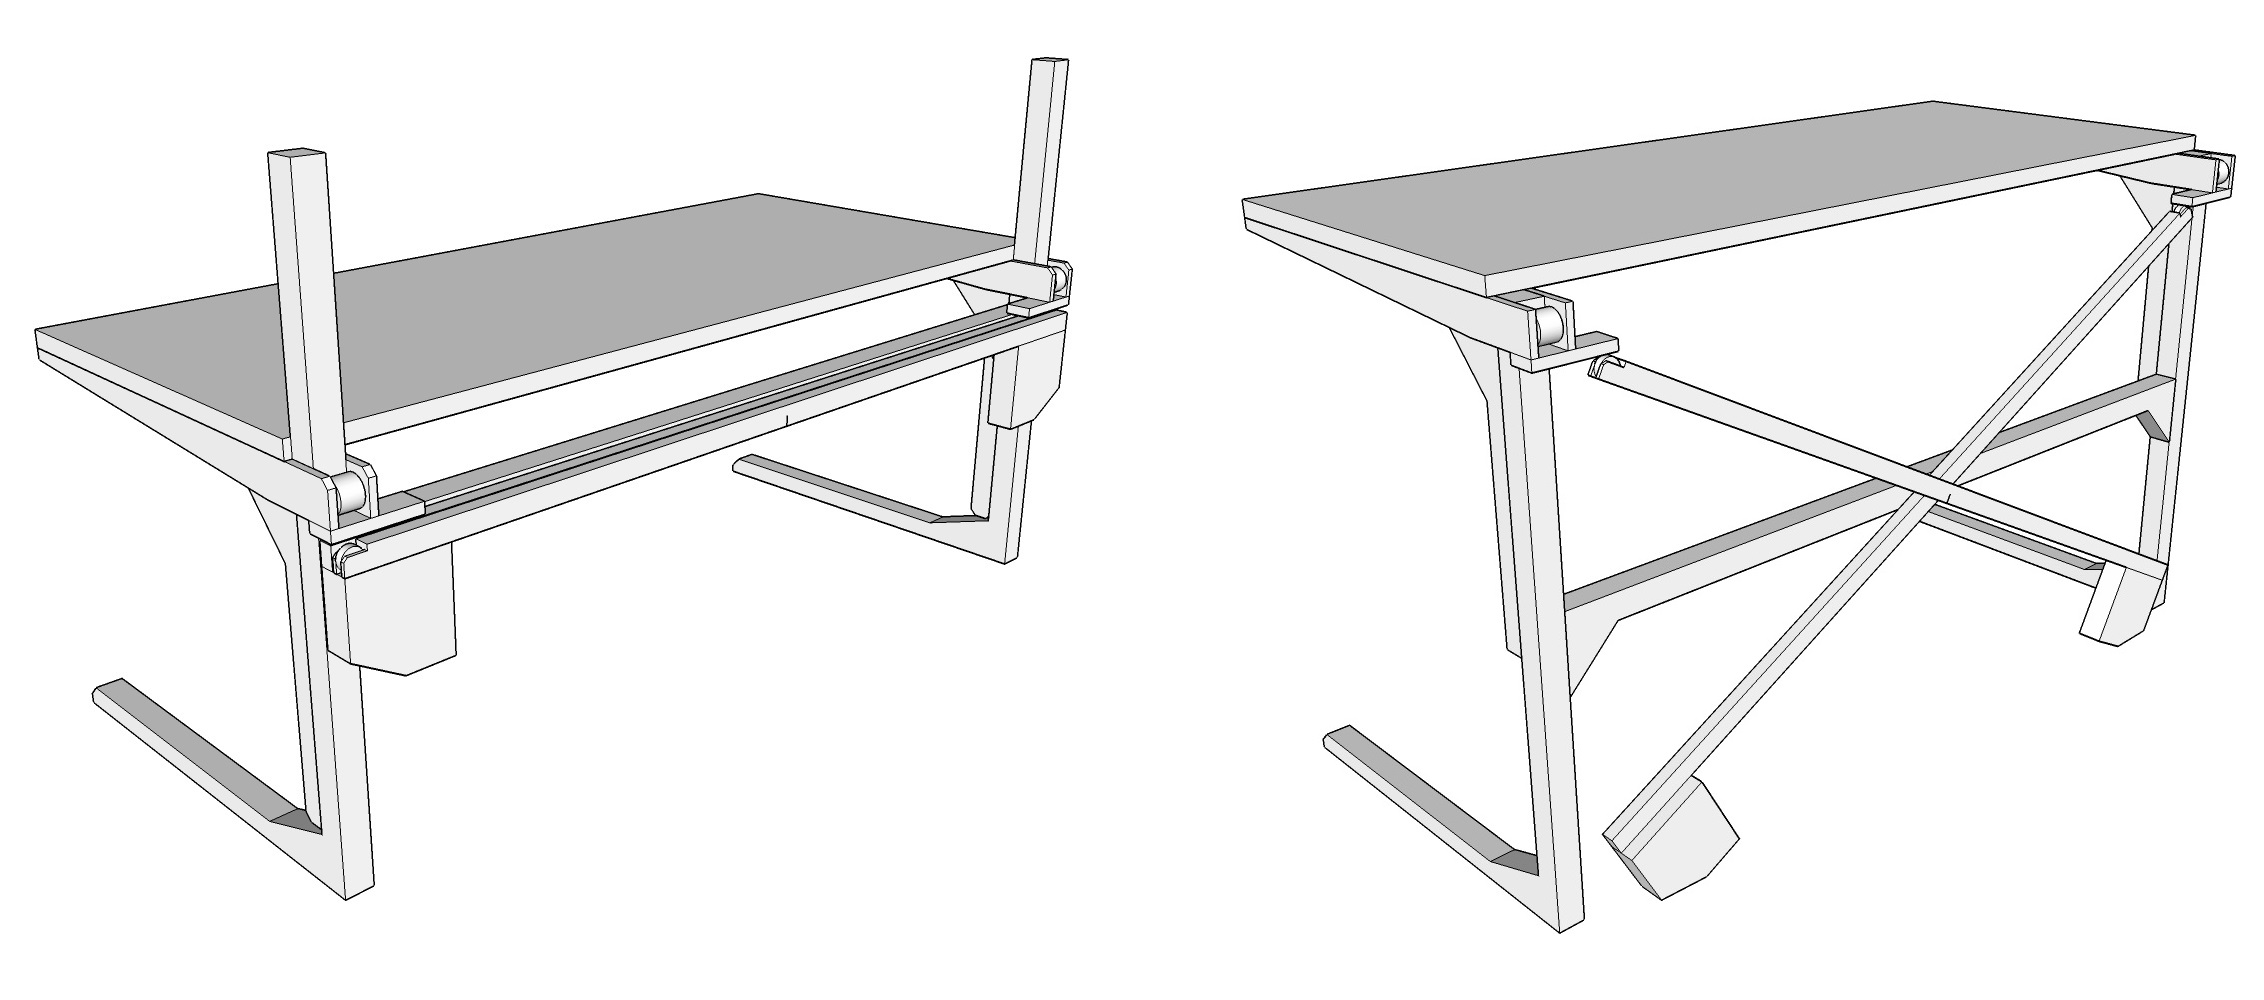 Scott Rumschlag's DIY Motor-Free, Height-Adjustable Standing Desk - Core77